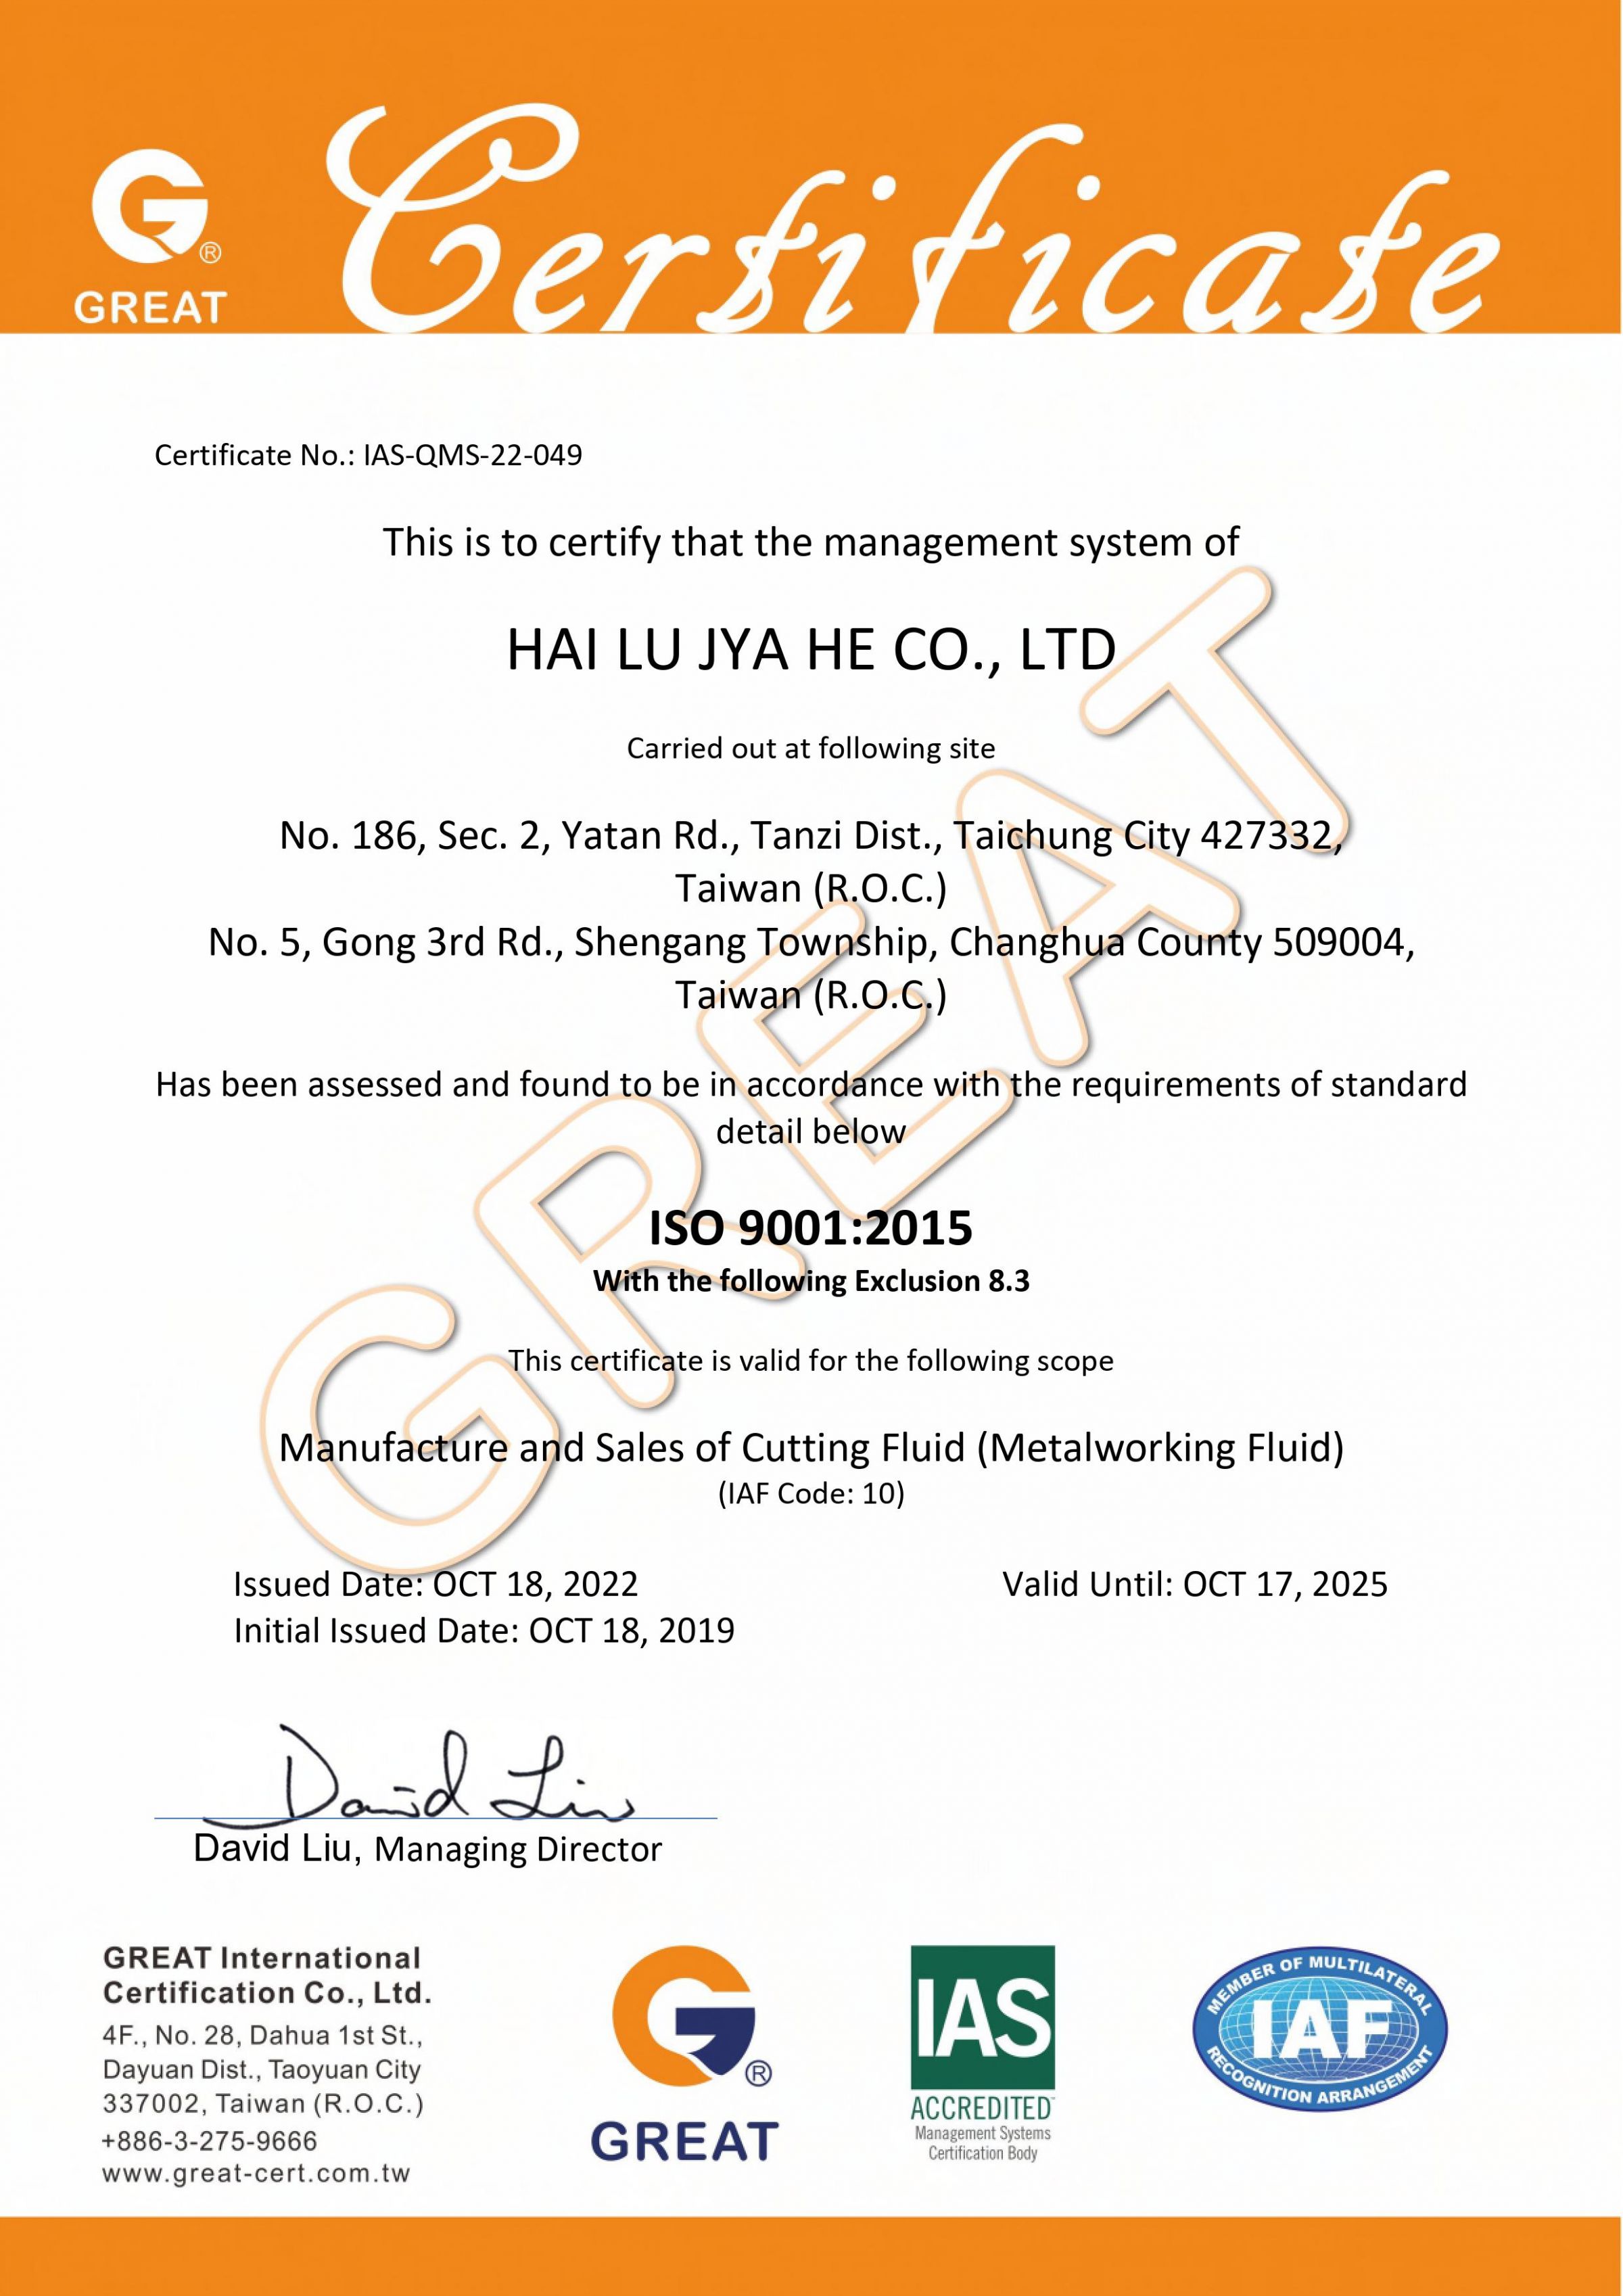 ISO 9001:2015 (Sistema de Gestão da Qualidade)